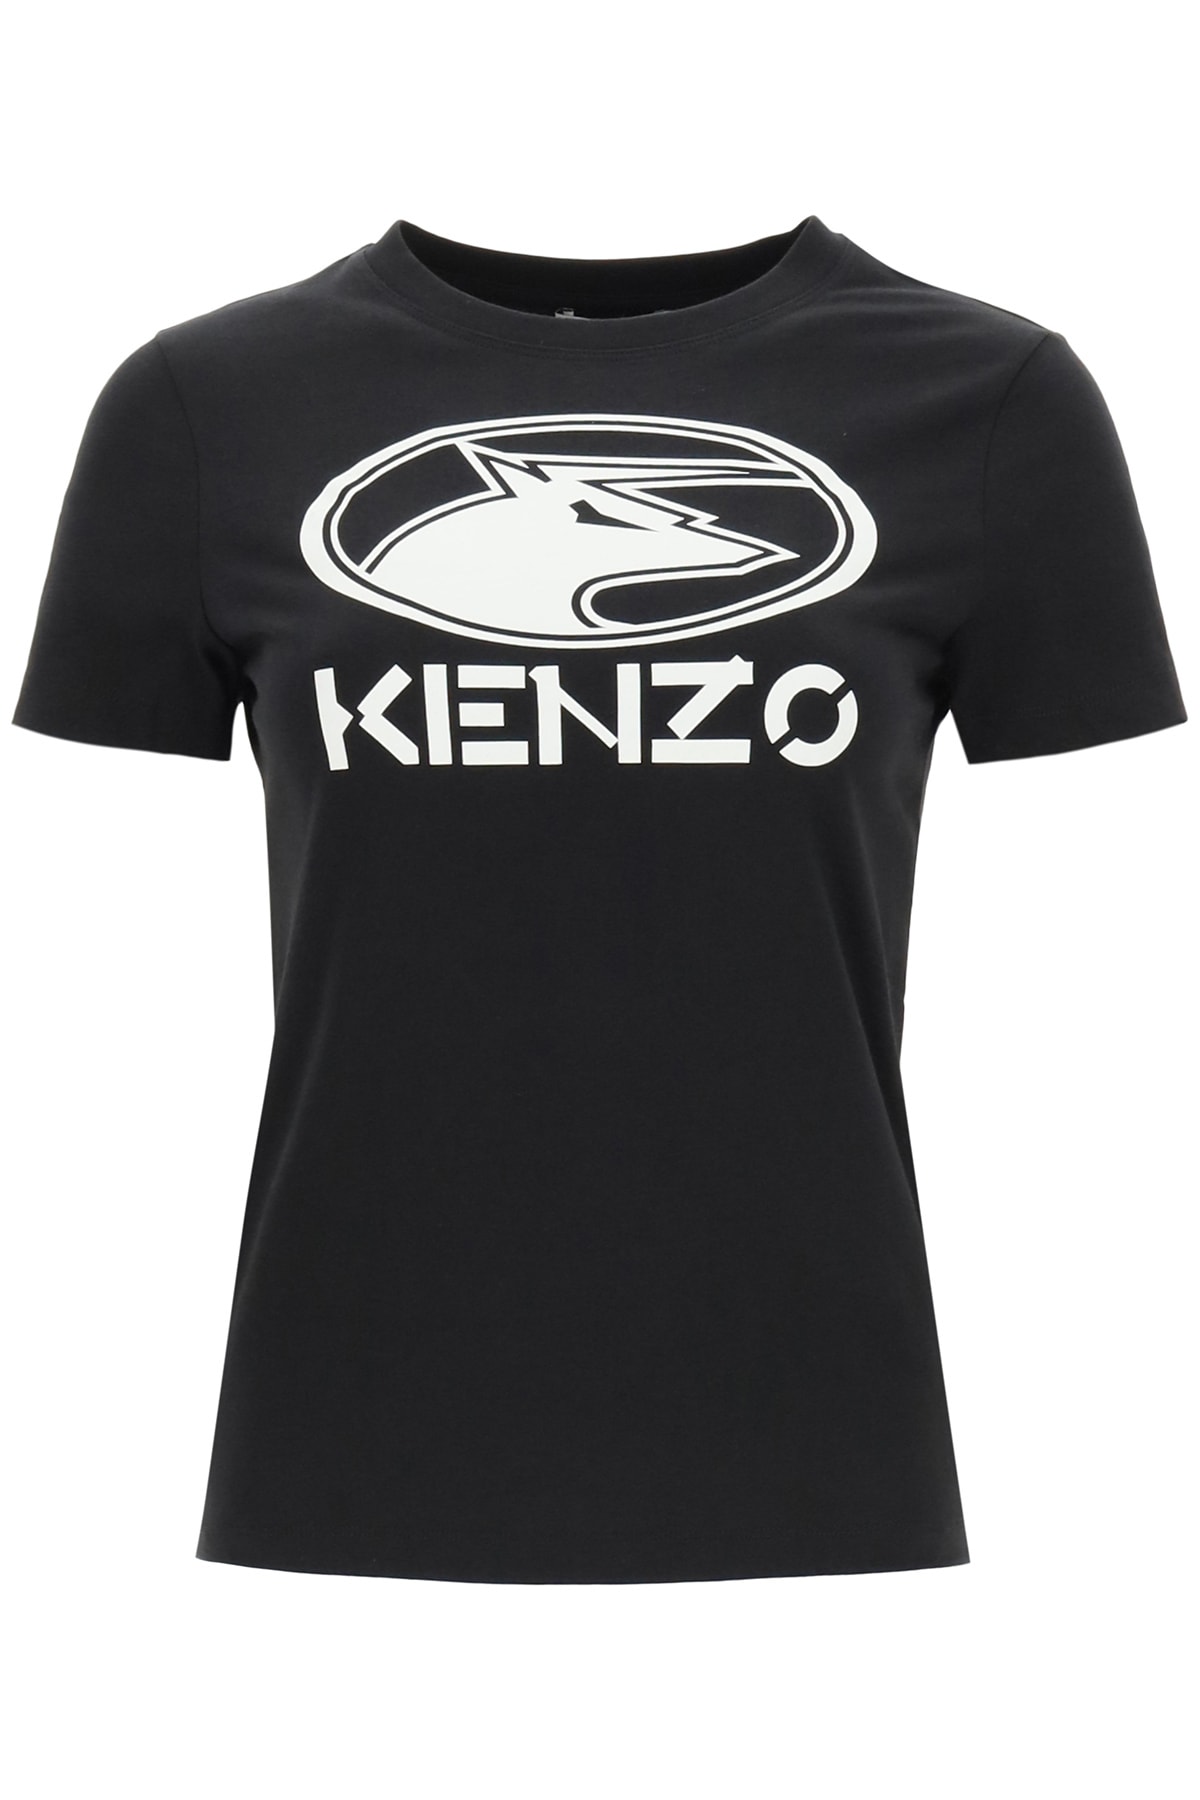 Kenzo Kenzo Ox T-shirt